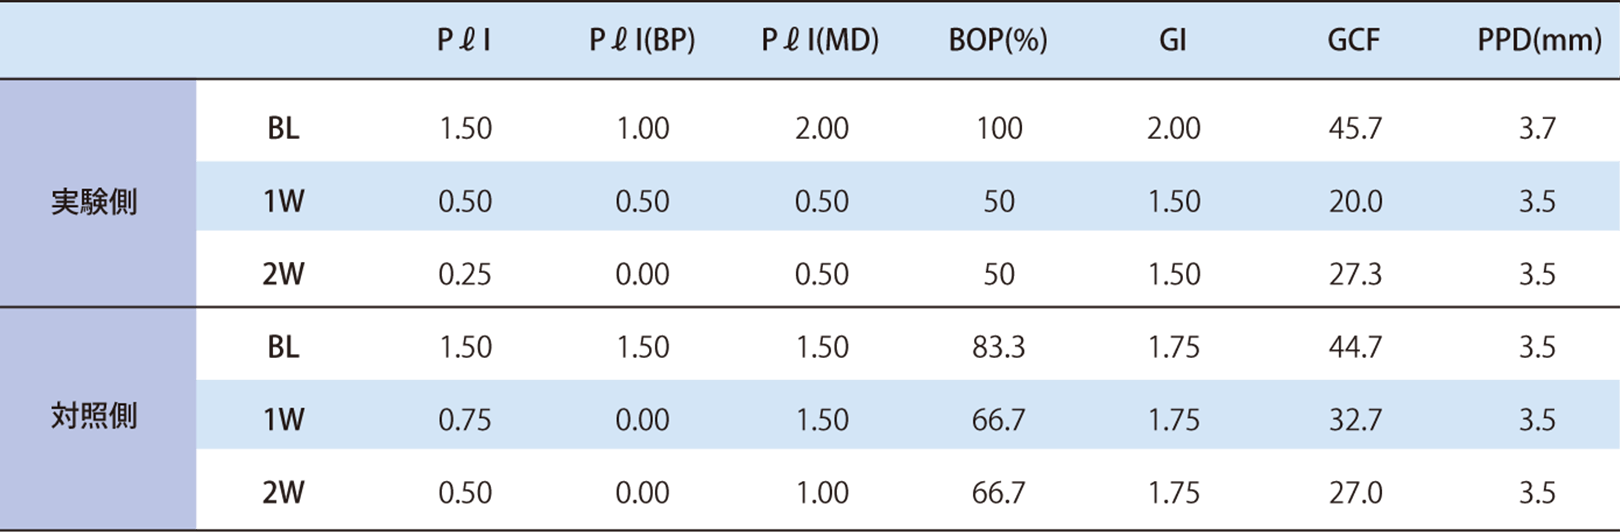 臨床所見の経時的変化 PℓI : Plaque index, BP: 頰側および口蓋側, MD: 近心および舌側, BOP: Bleeding on Probing, GI: Gingival Index, GCF: Gingival Crevicular Fluid , PPD: Probing Pocket Depth